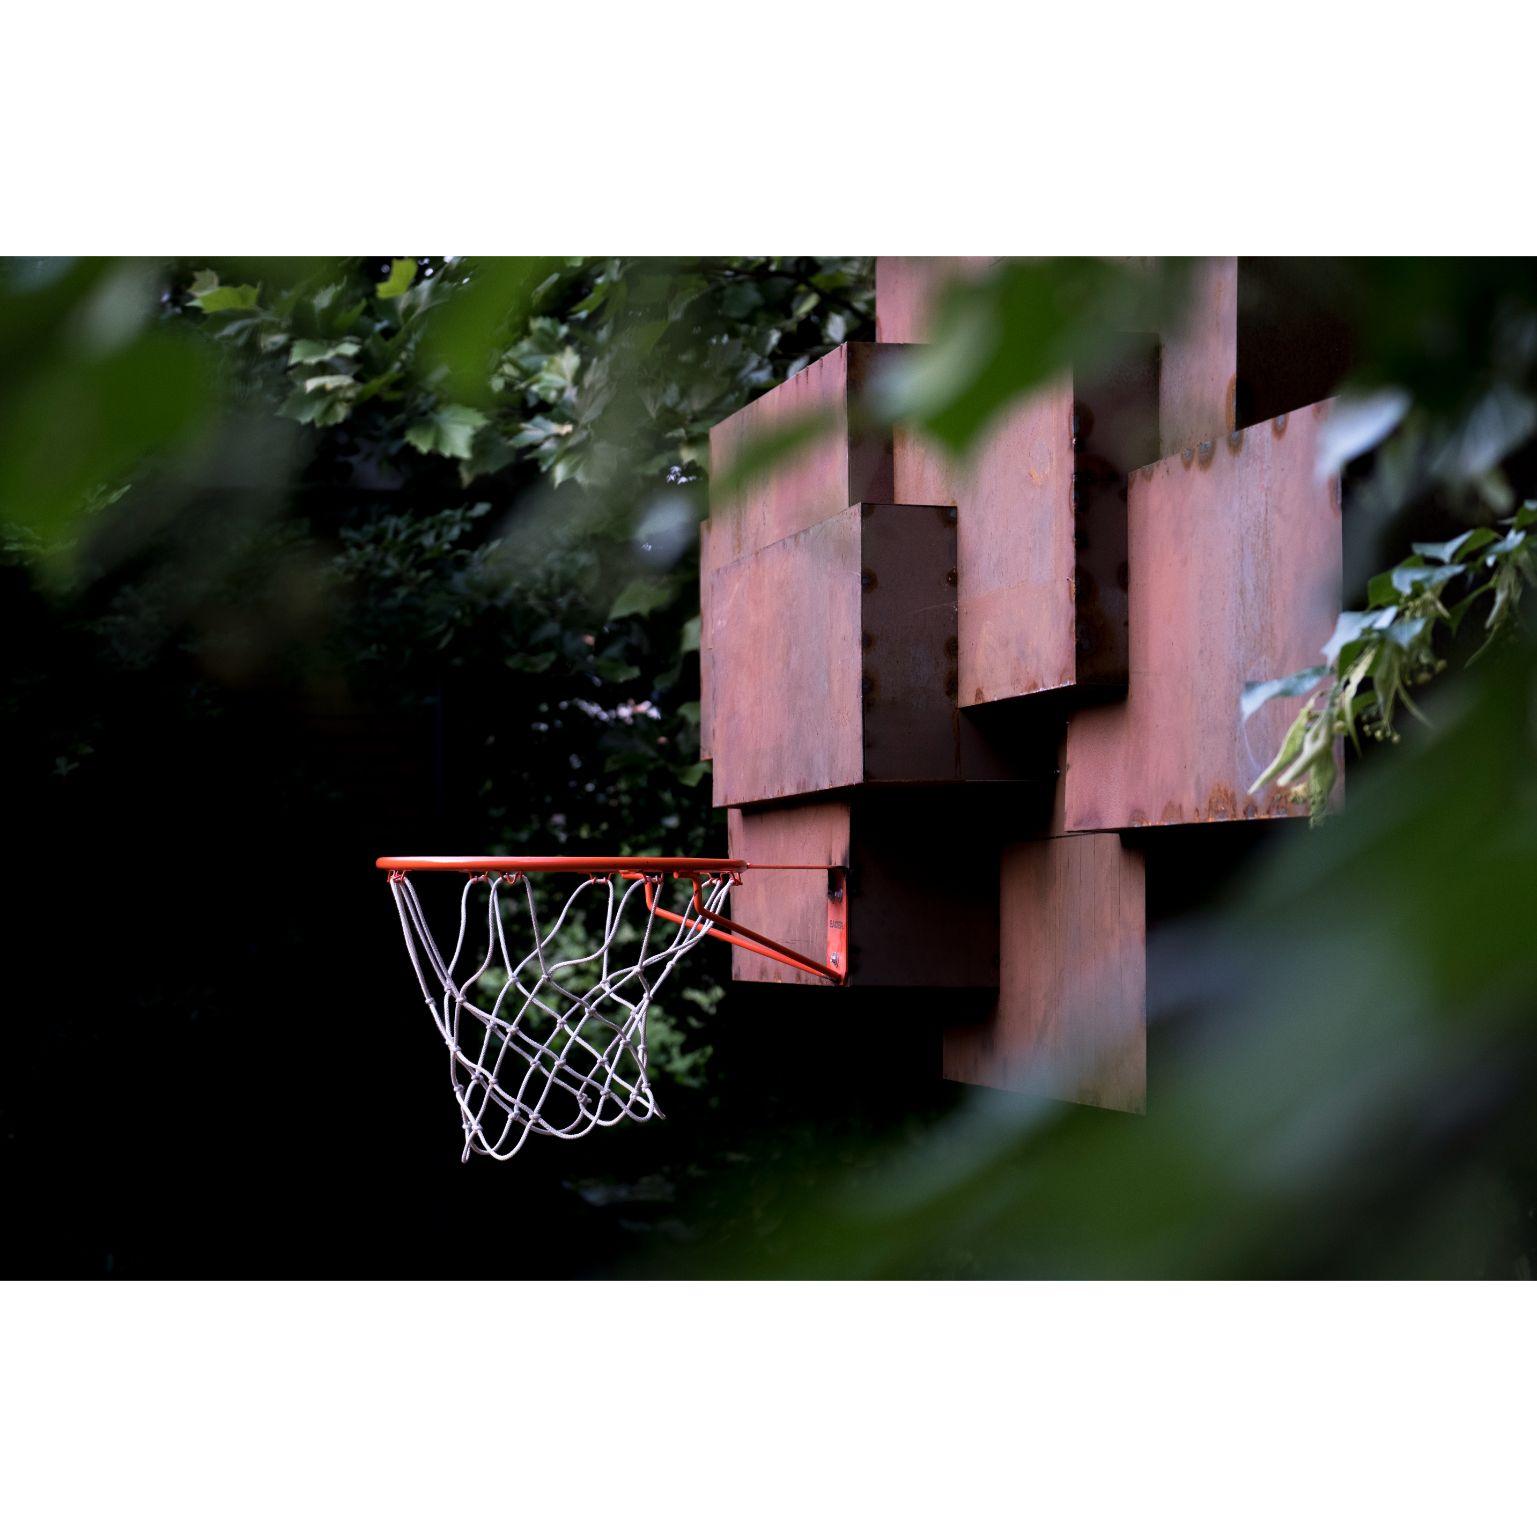 Rêves rouillés - sculpture de l'Atelier Haute Cuisine
Dimensions : 200 x 200 cm
Matériaux : Fer

L'Atelier Haute Cuisine a transformé une ancienne piscine en un terrain de basket-ball avec une touche d'originalité. 